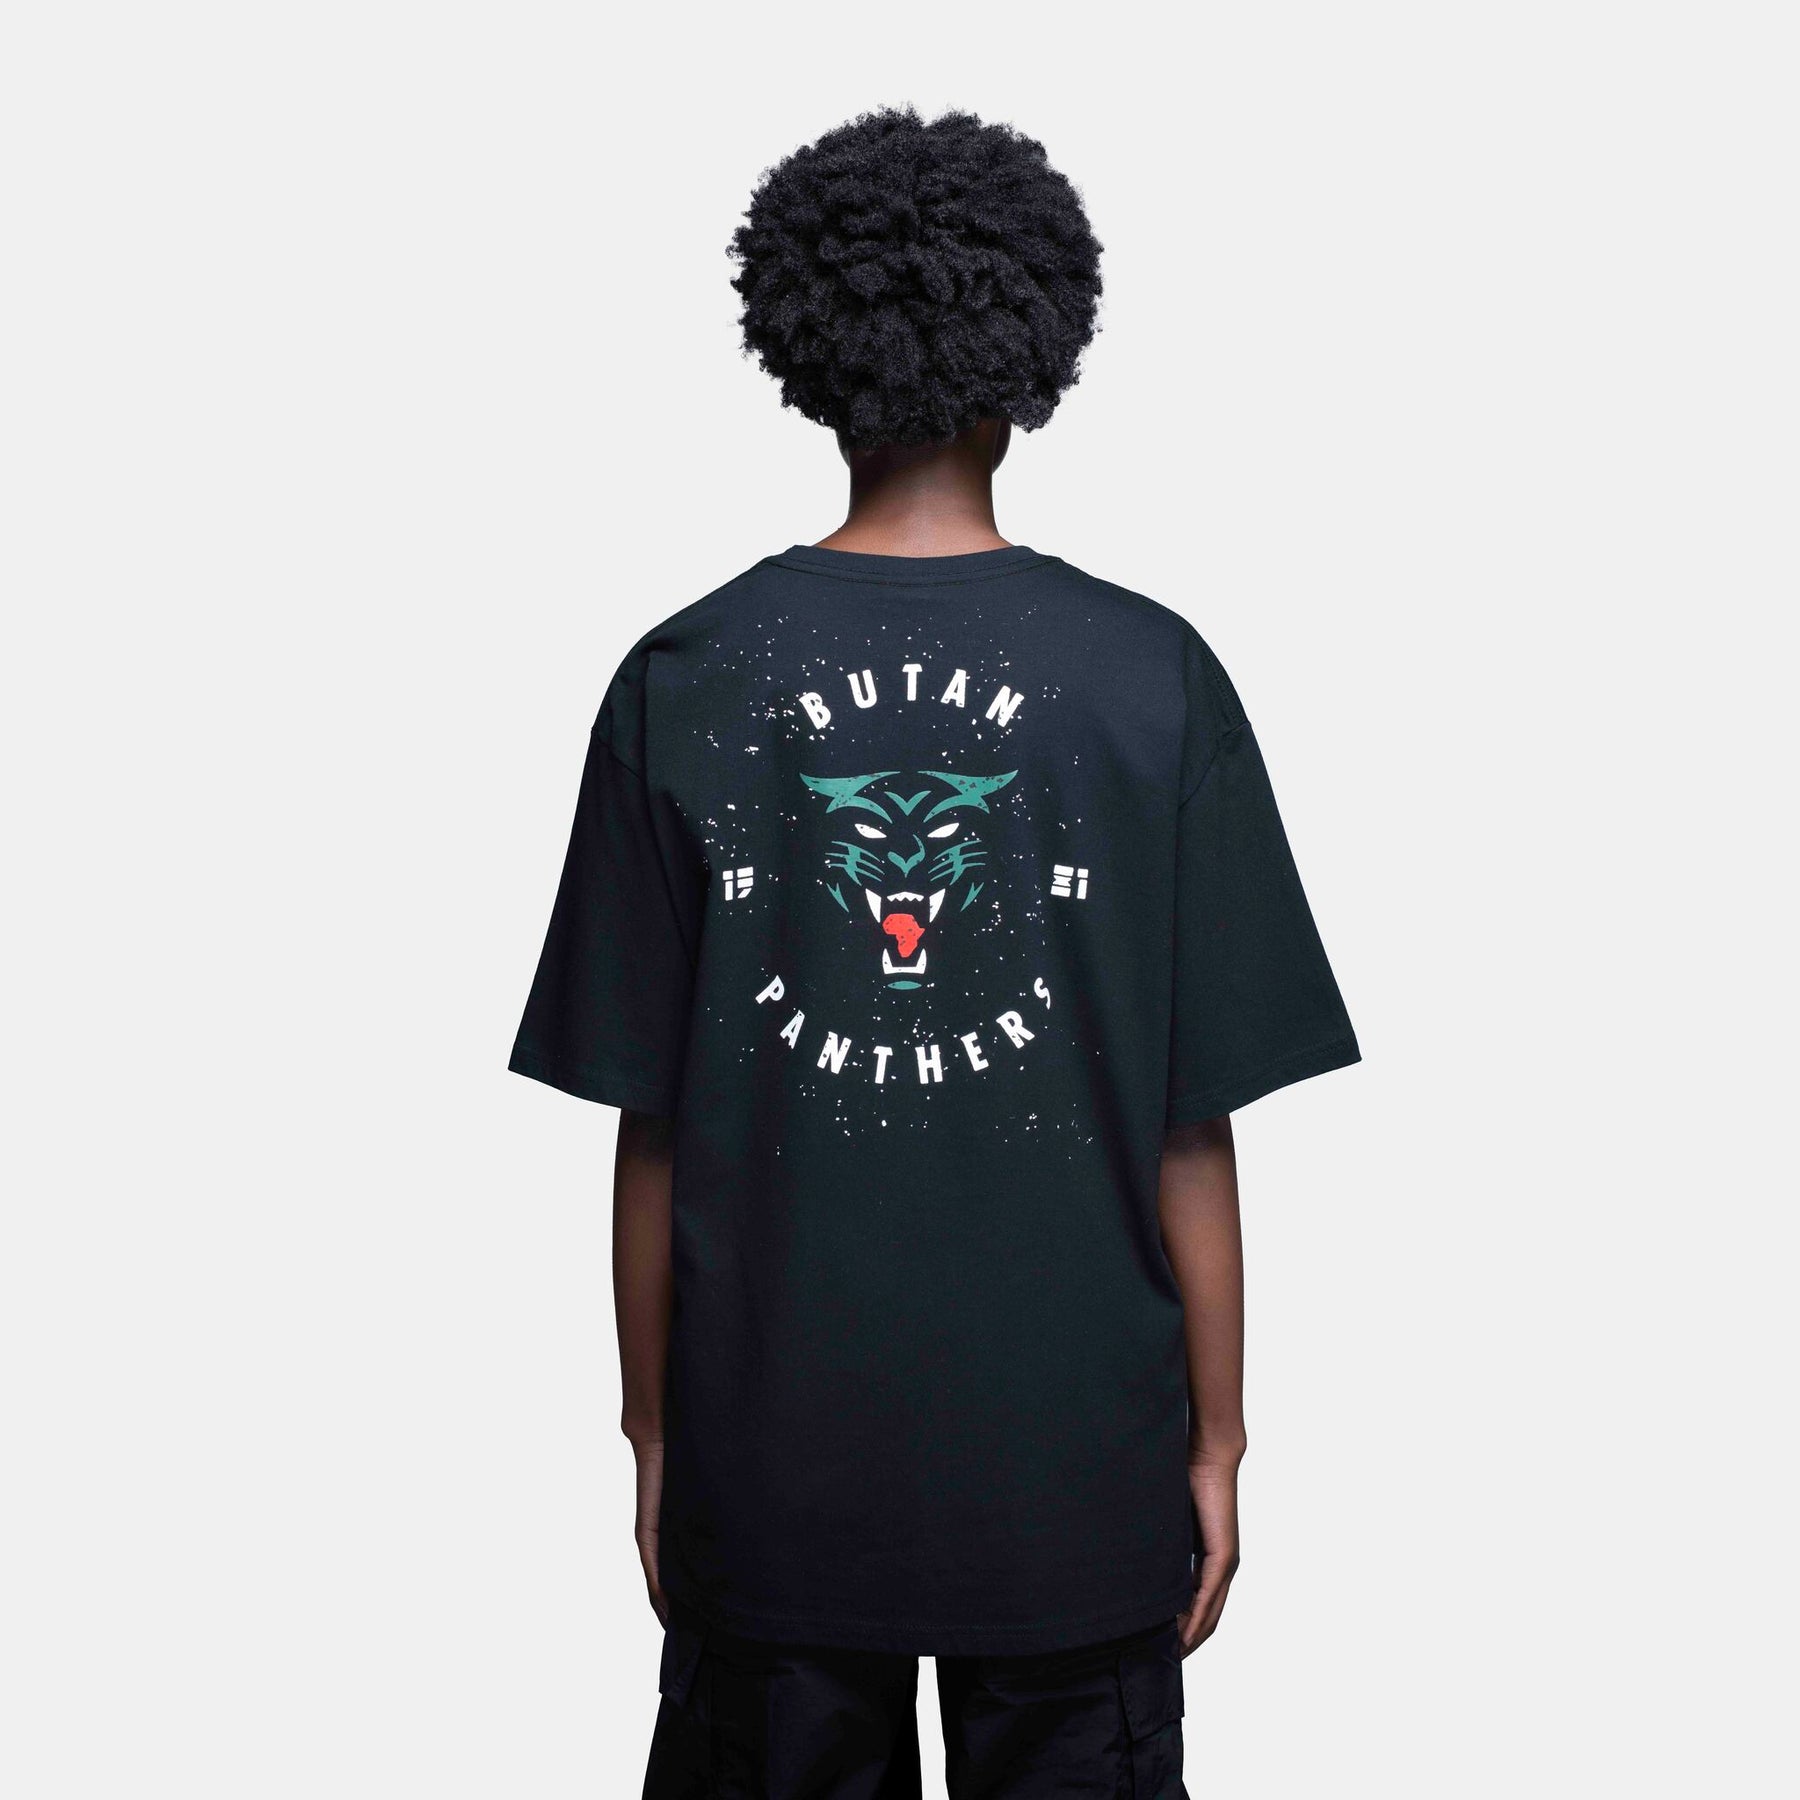 Butan Panthers | Team T-shirt